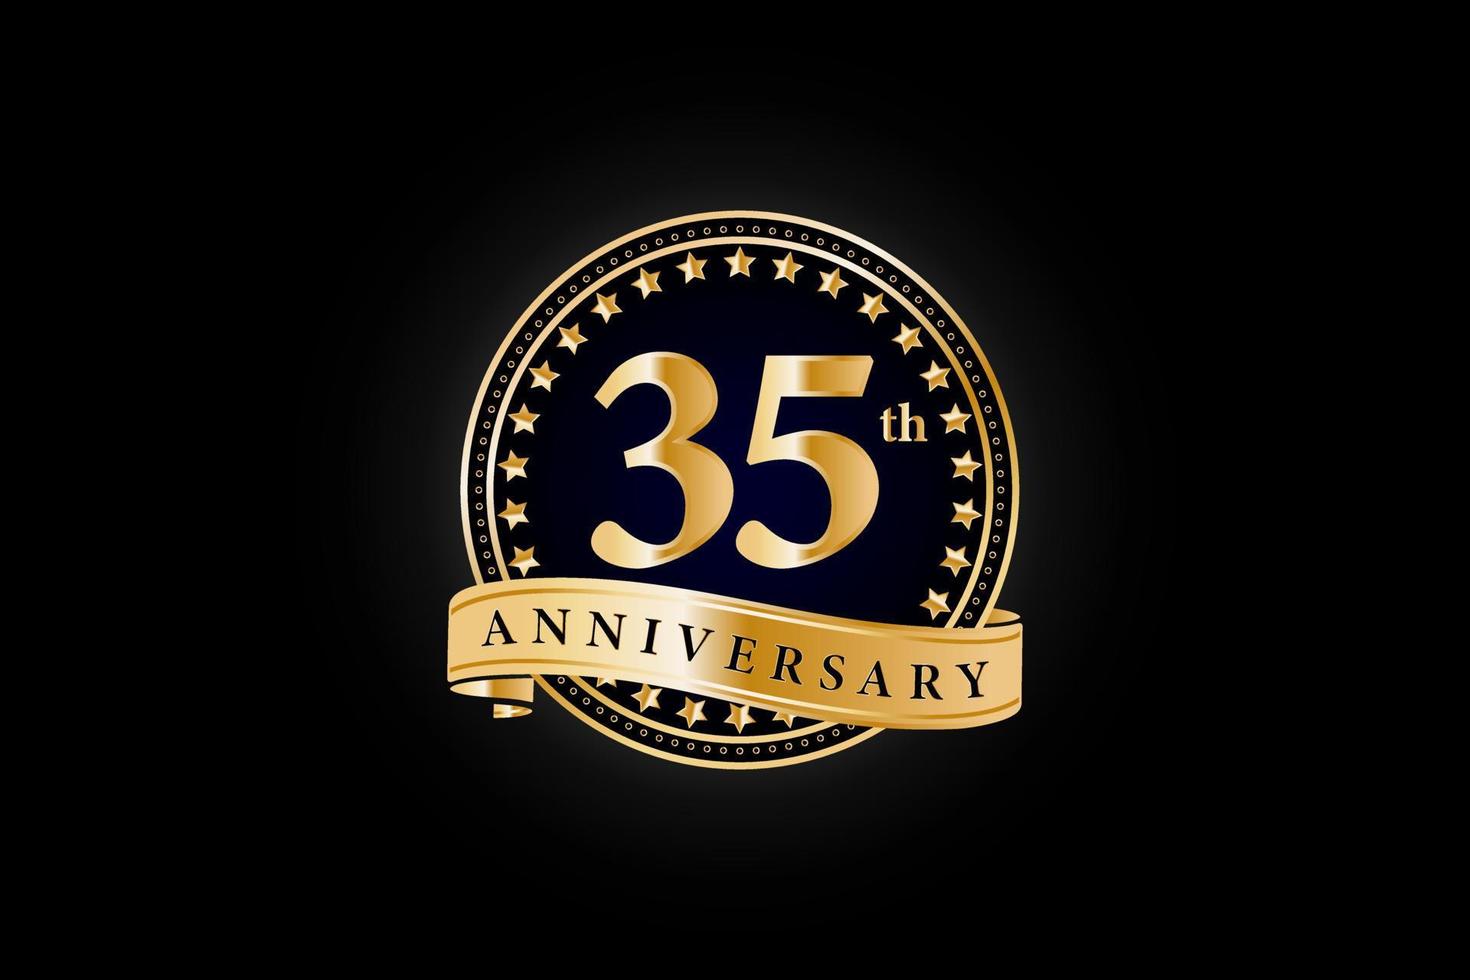 35:e årsdag gyllene guld logotyp med ringa och guld band isolerat på svart bakgrund, vektor design för firande.